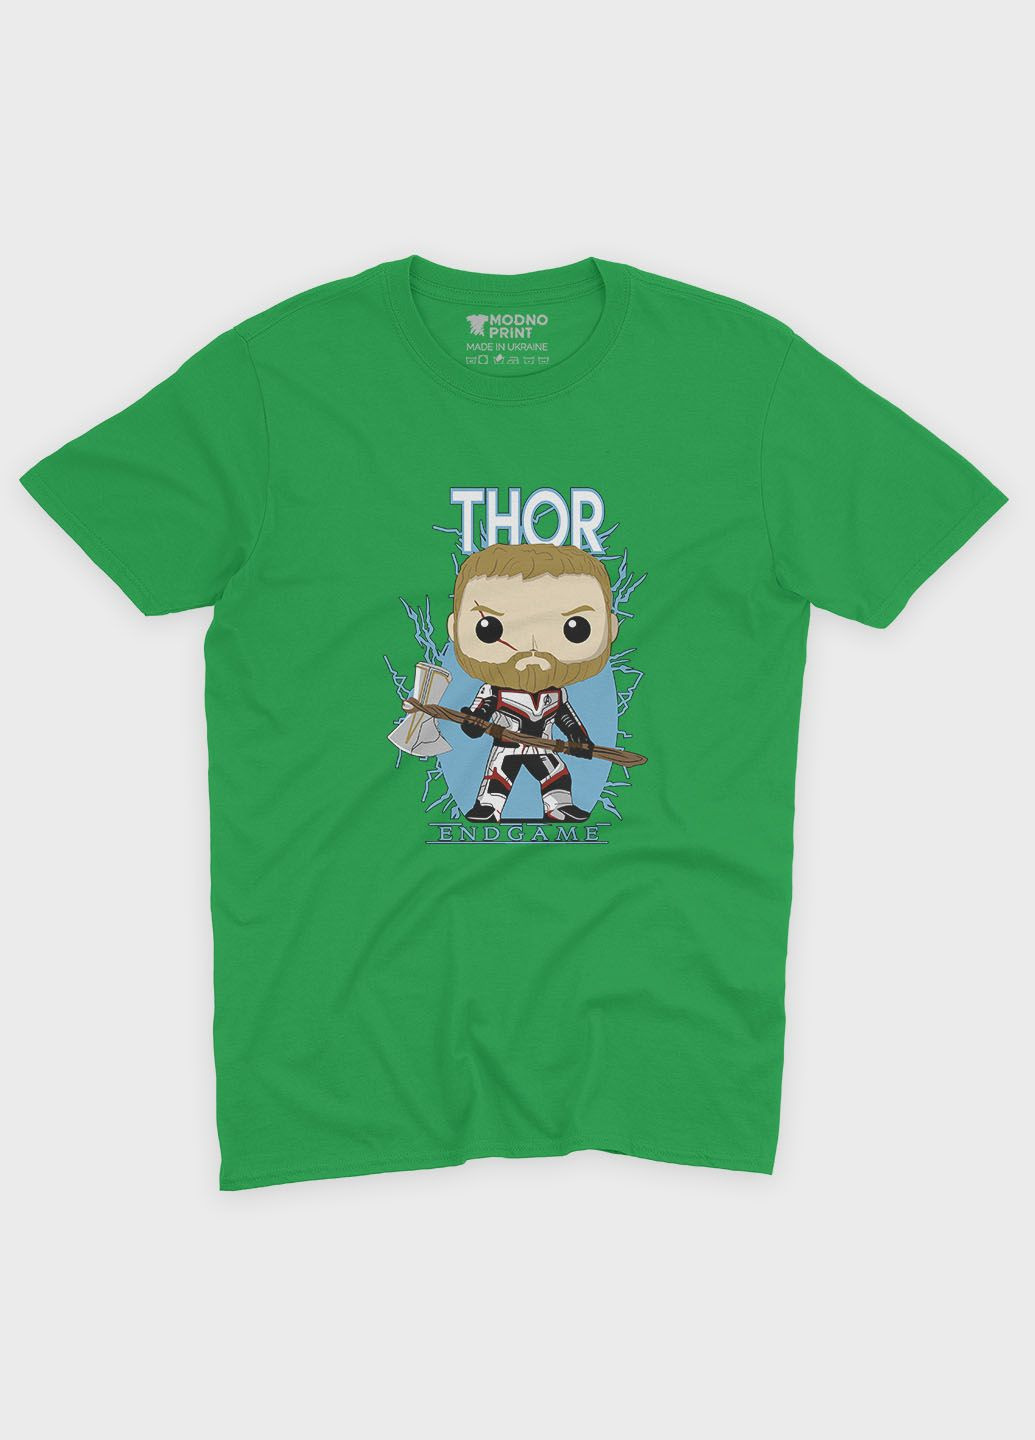 Зеленая демисезонная футболка для девочки с принтом супергероя - тор (ts001-1-keg-006-024-004-g) Modno